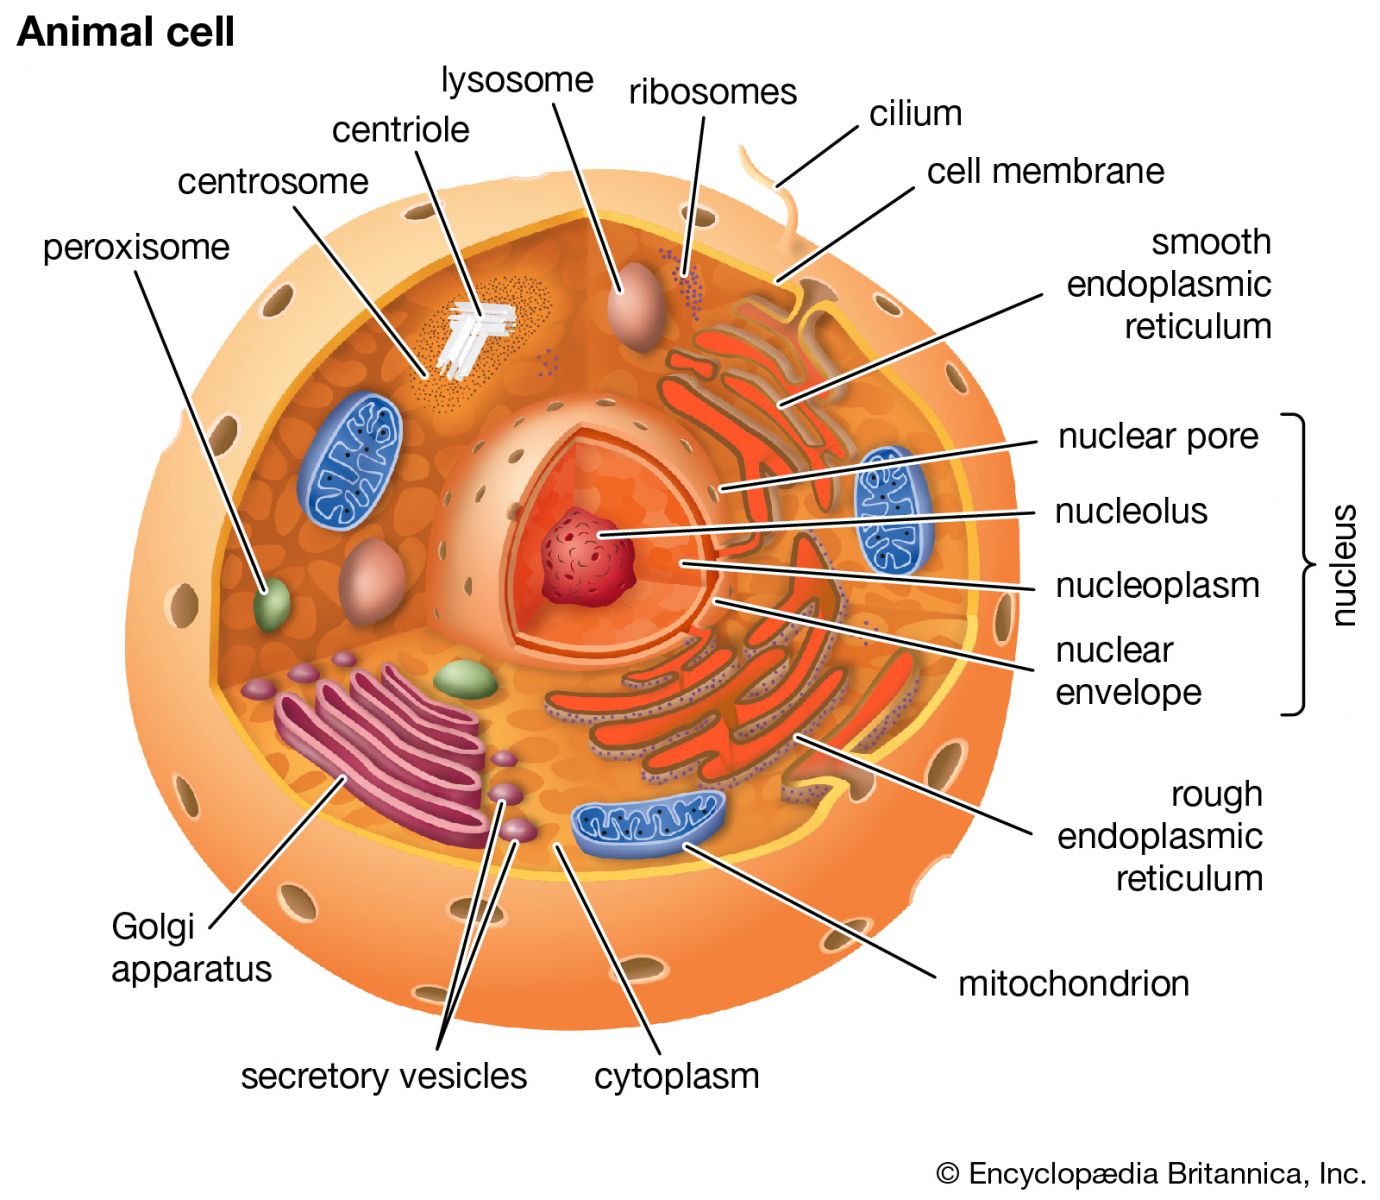 badan golgi merupakan bagian dari sel yang memiliki fungsi